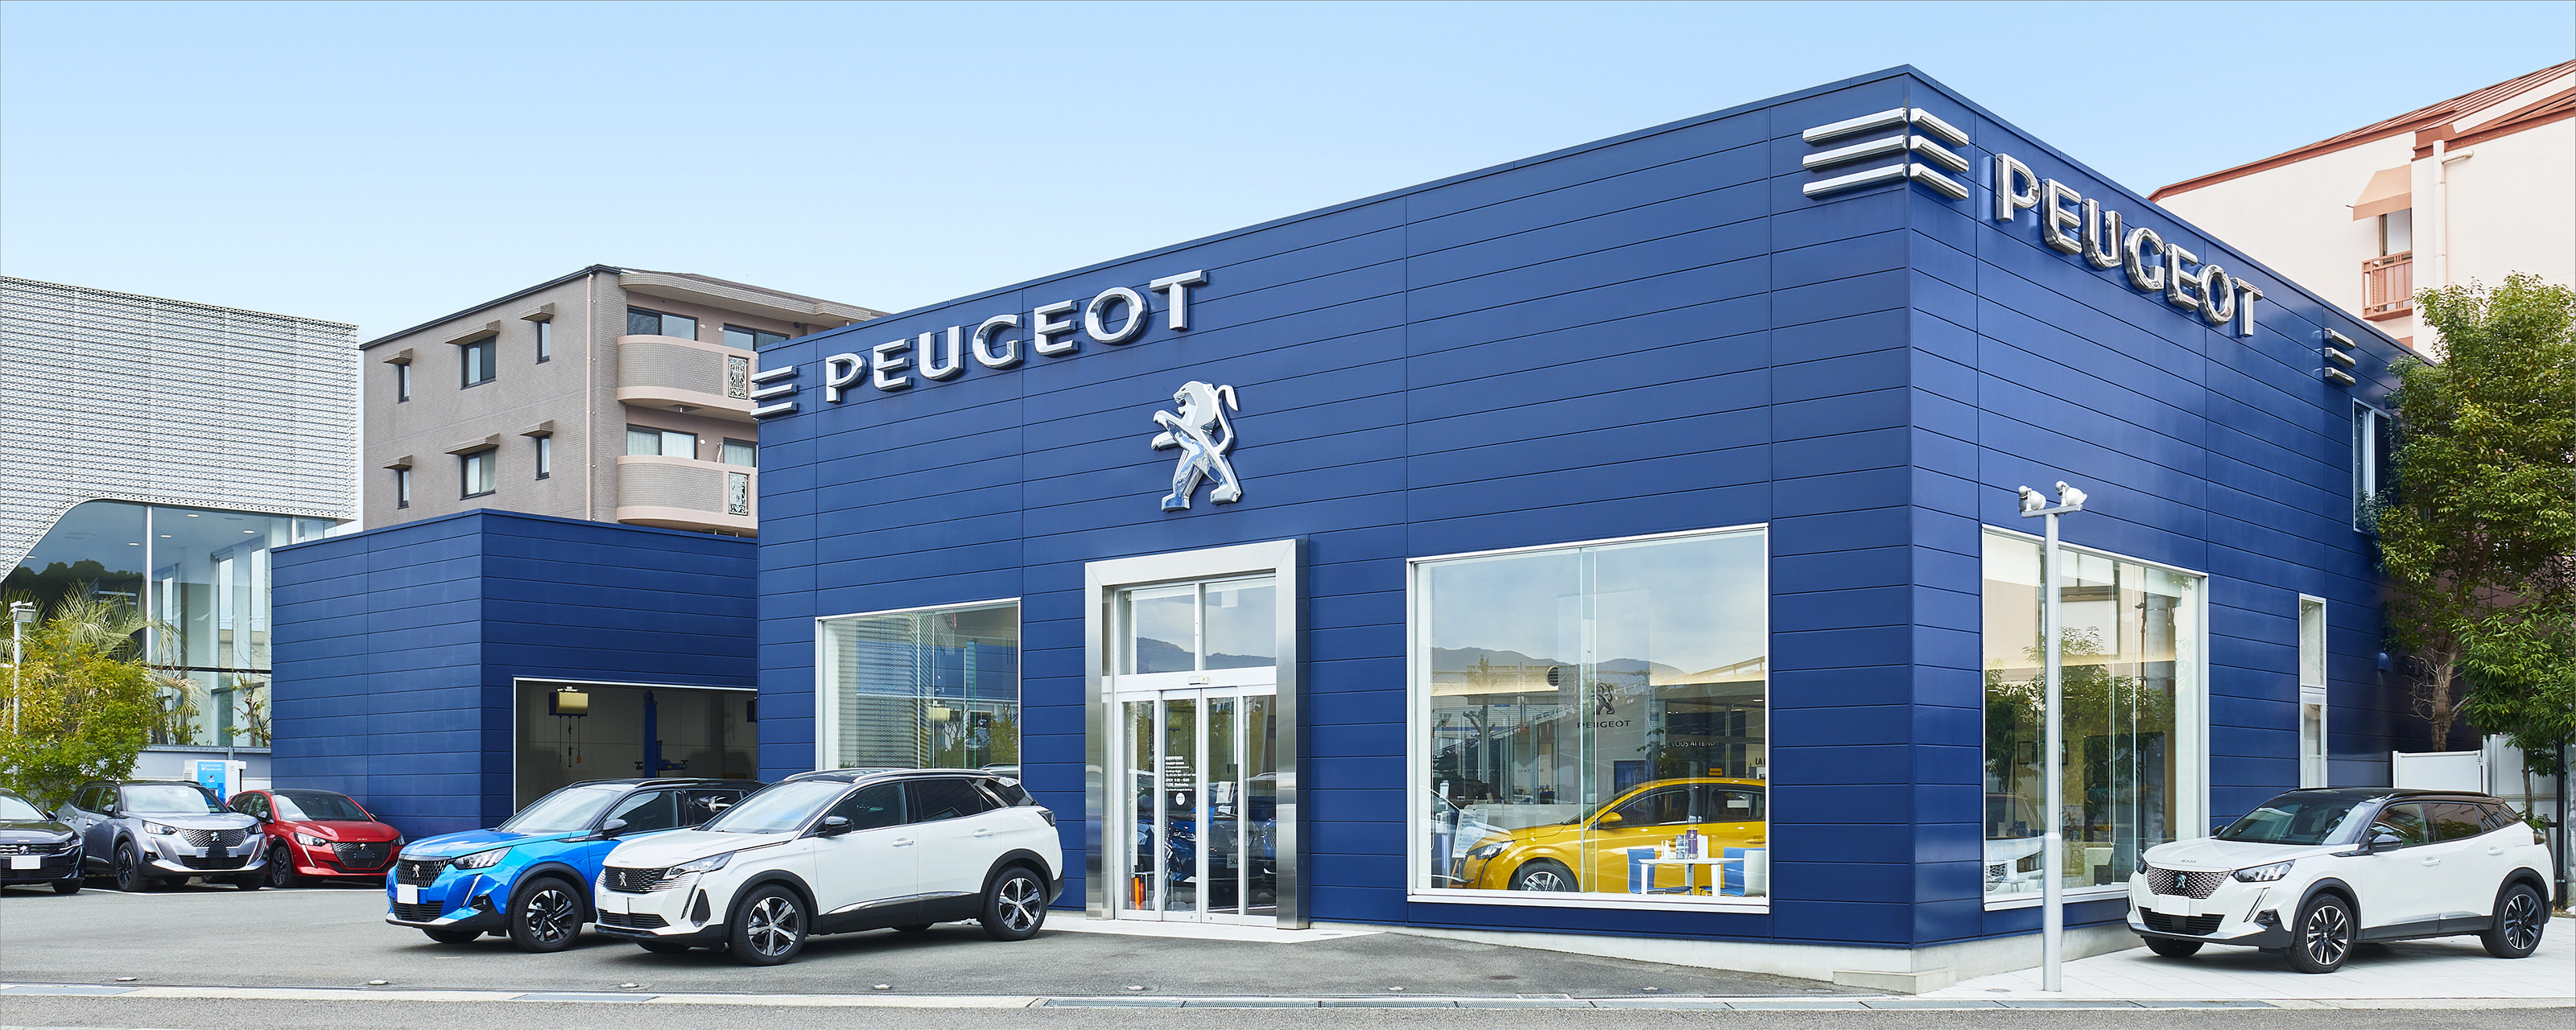 Peugeot_ibaraki_3200_1280.jpg